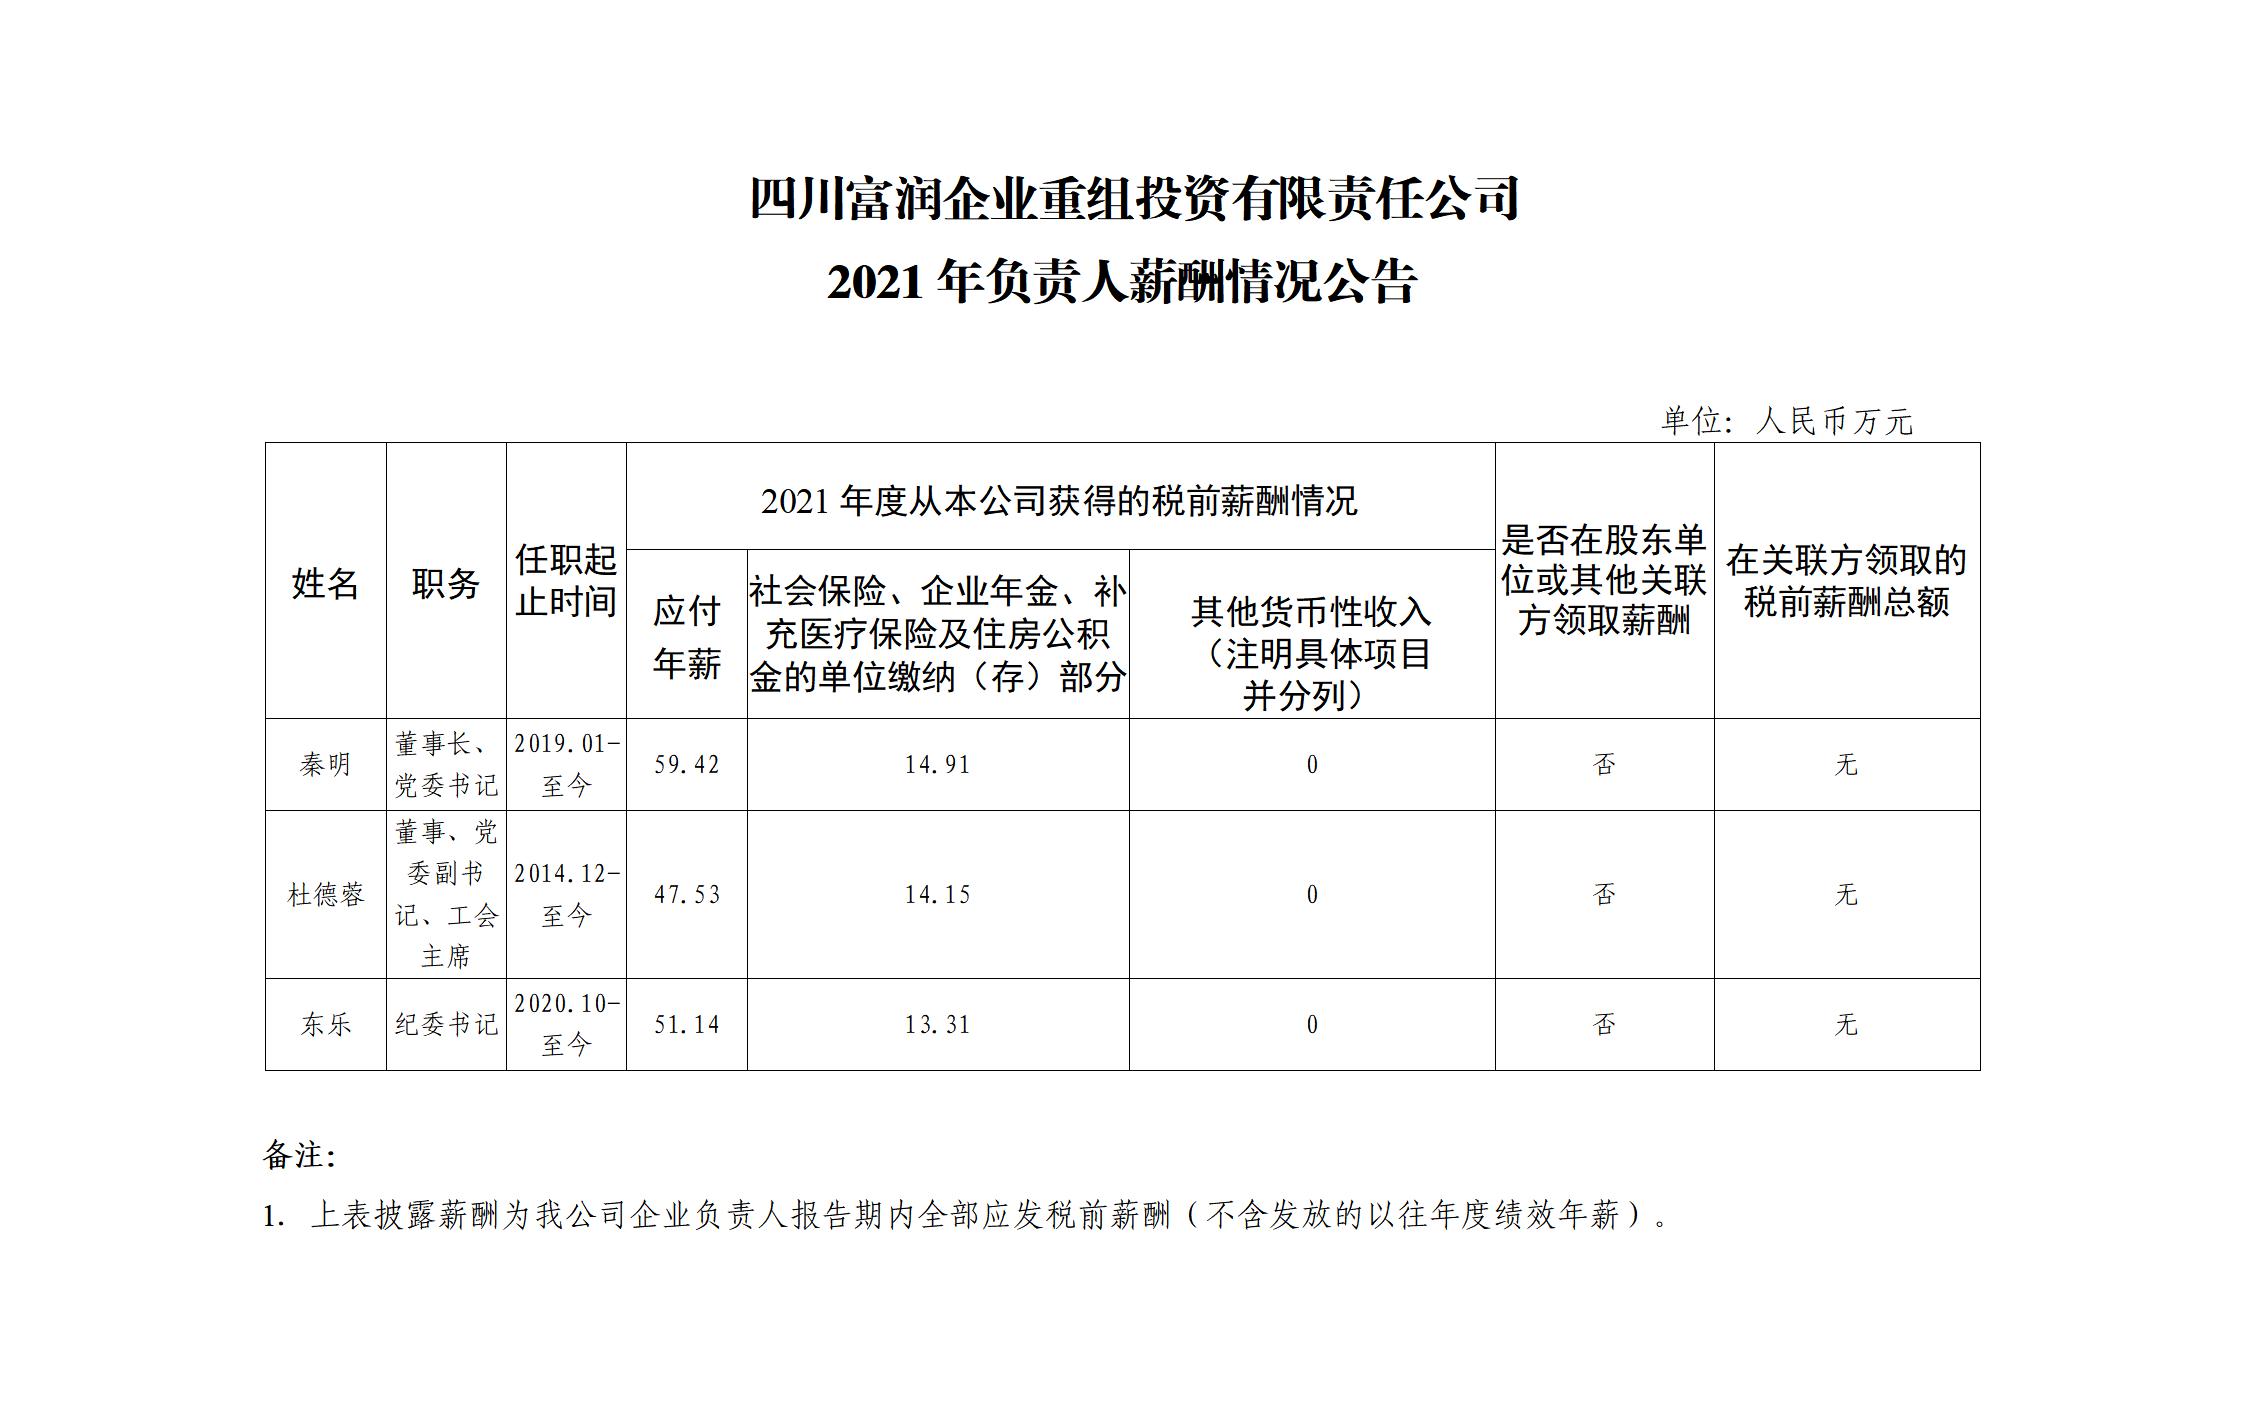 四川富润企业重组投资有限责任公司2021年企业负责人薪酬公示公告板_01.jpg